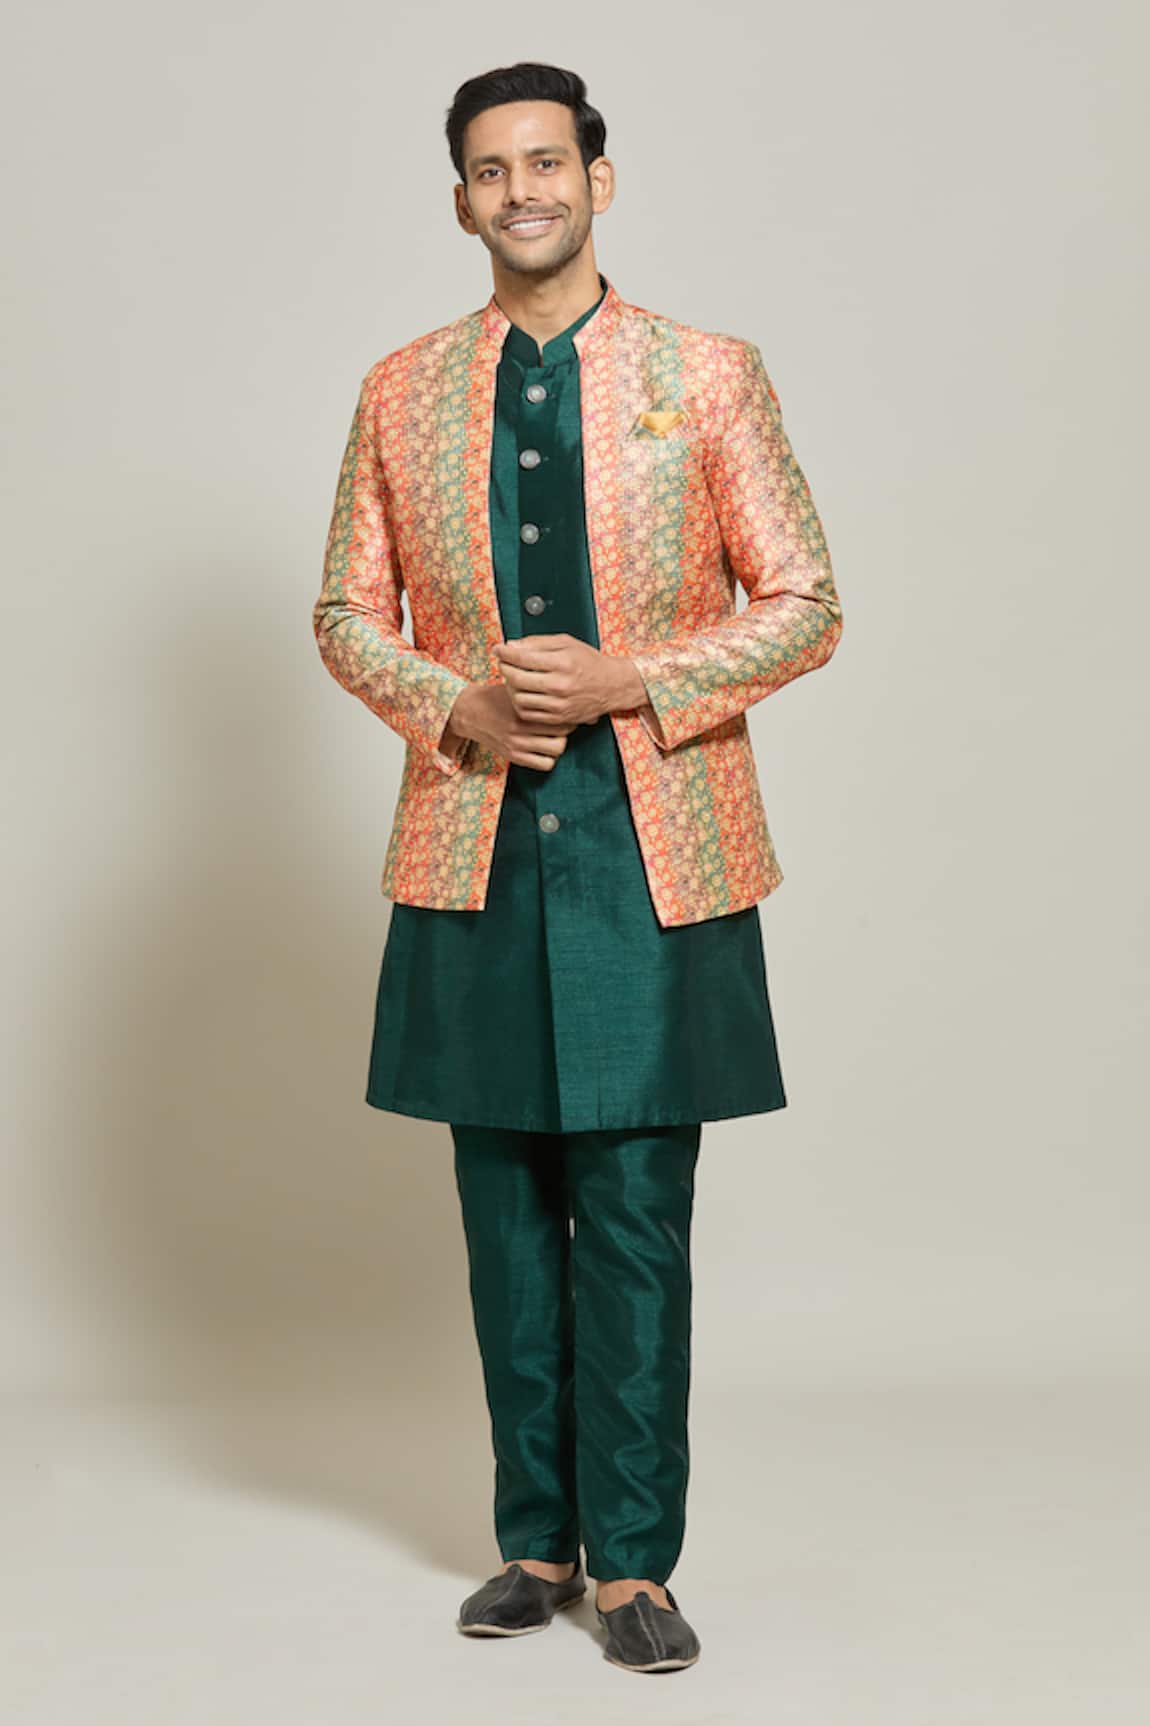 Aryavir Malhotra Sequin & Thread Embroidered Floral Pattern Jacket Pant Set